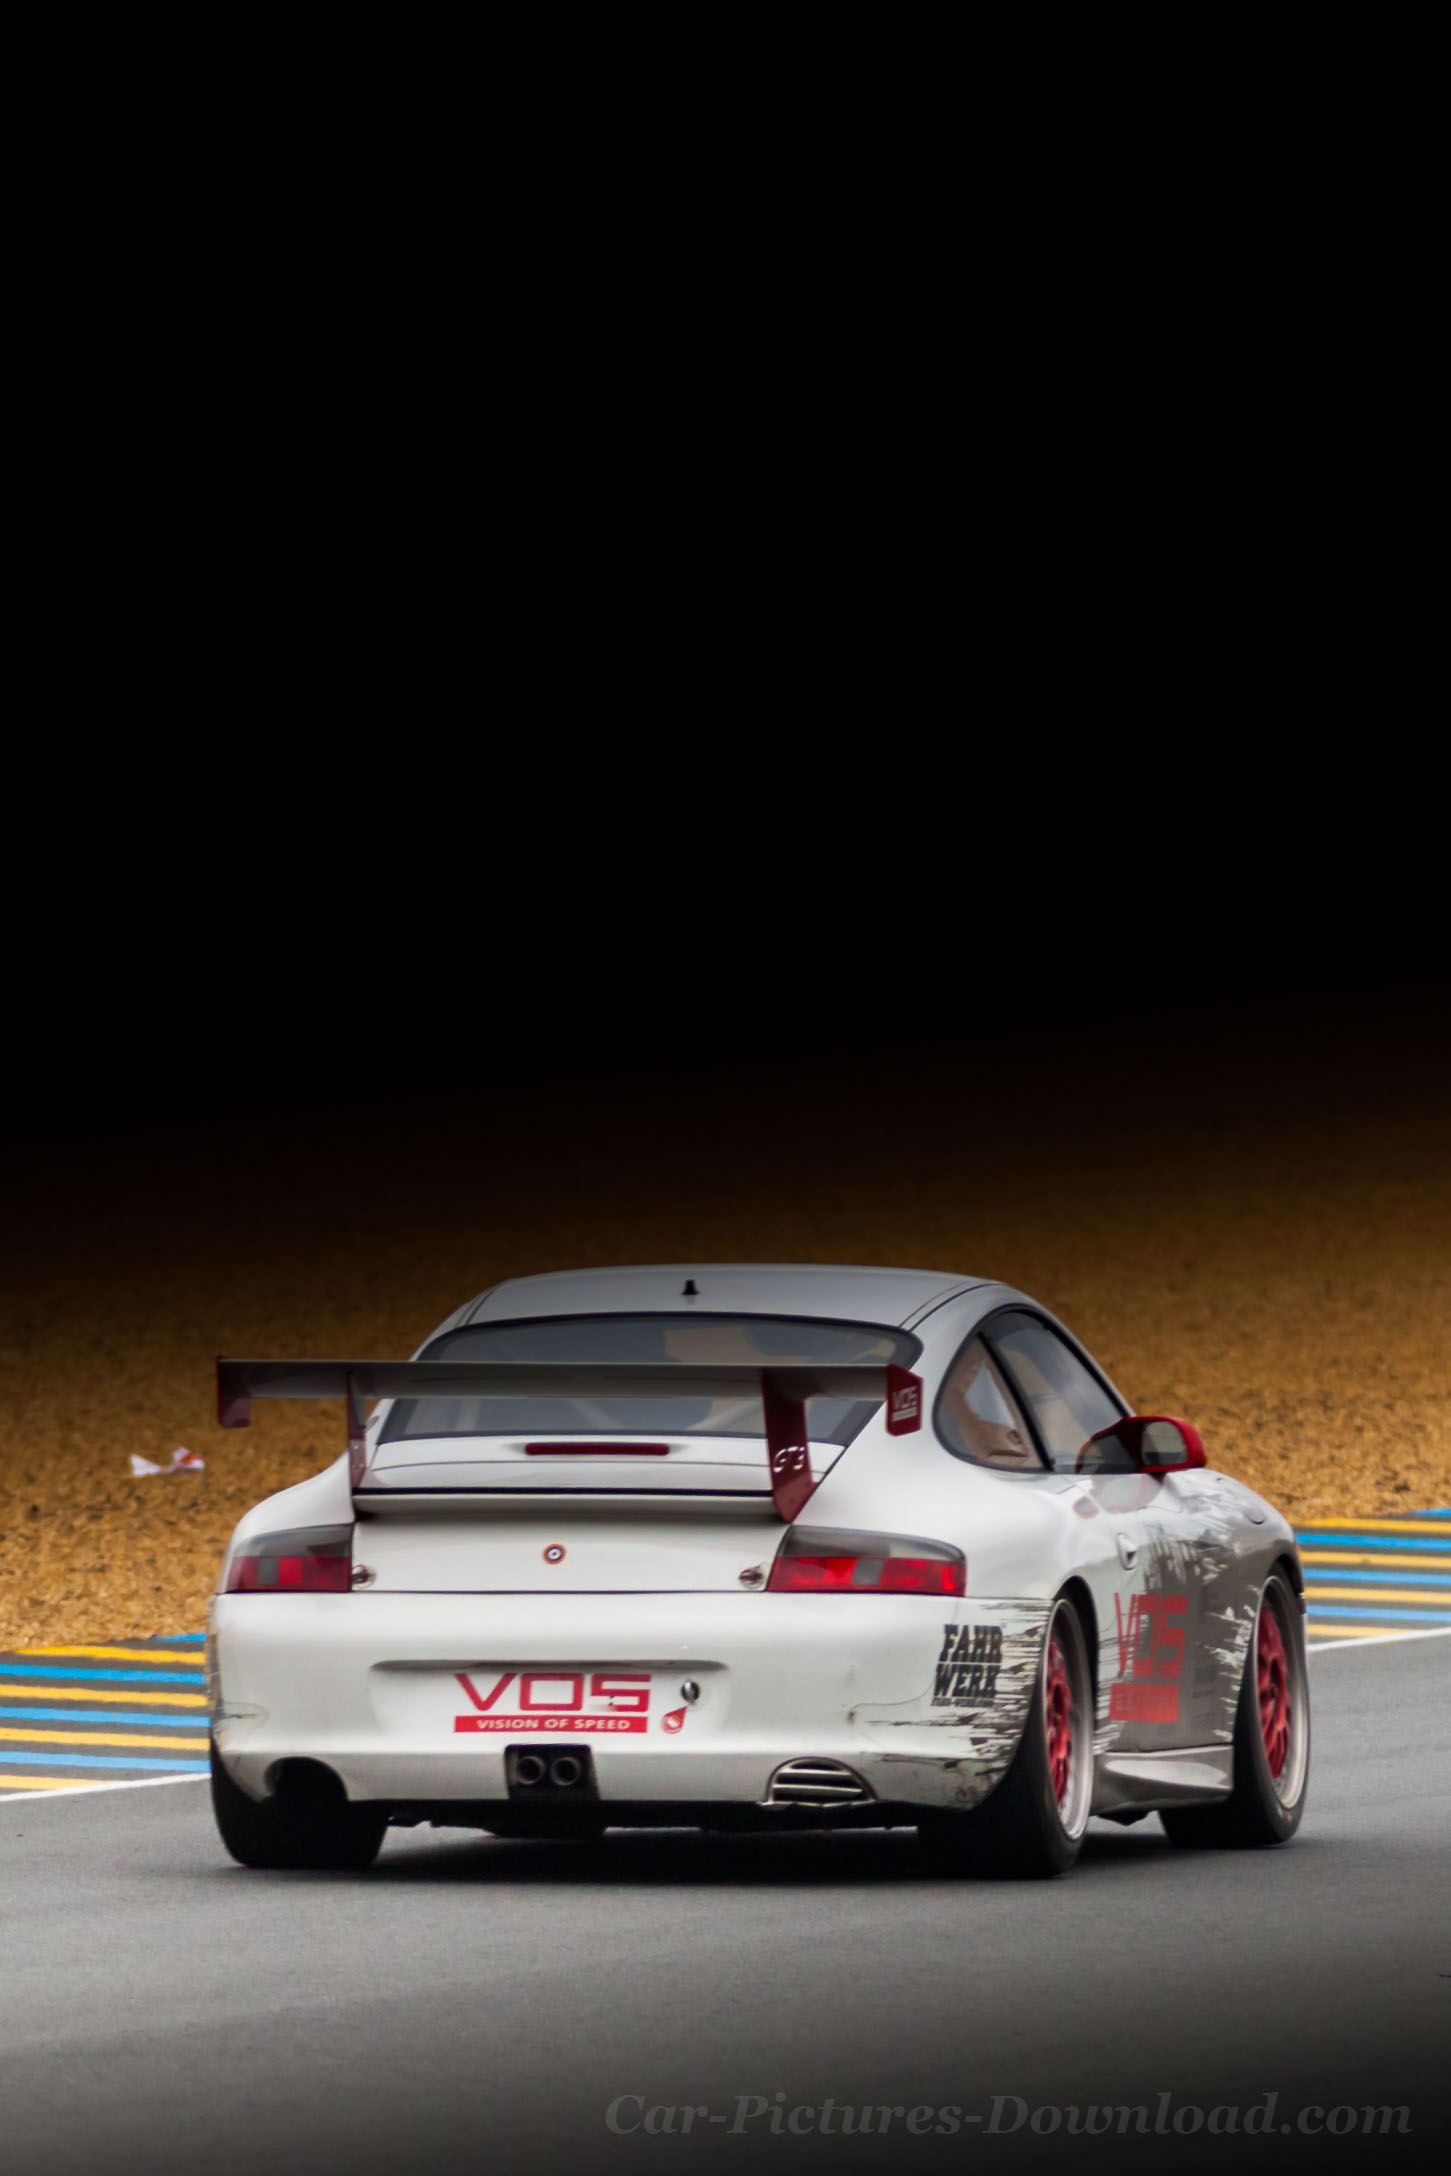 Porsche 911 Gt3 Wallpaper - Iphone 4 Gt3 Porsche - HD Wallpaper 